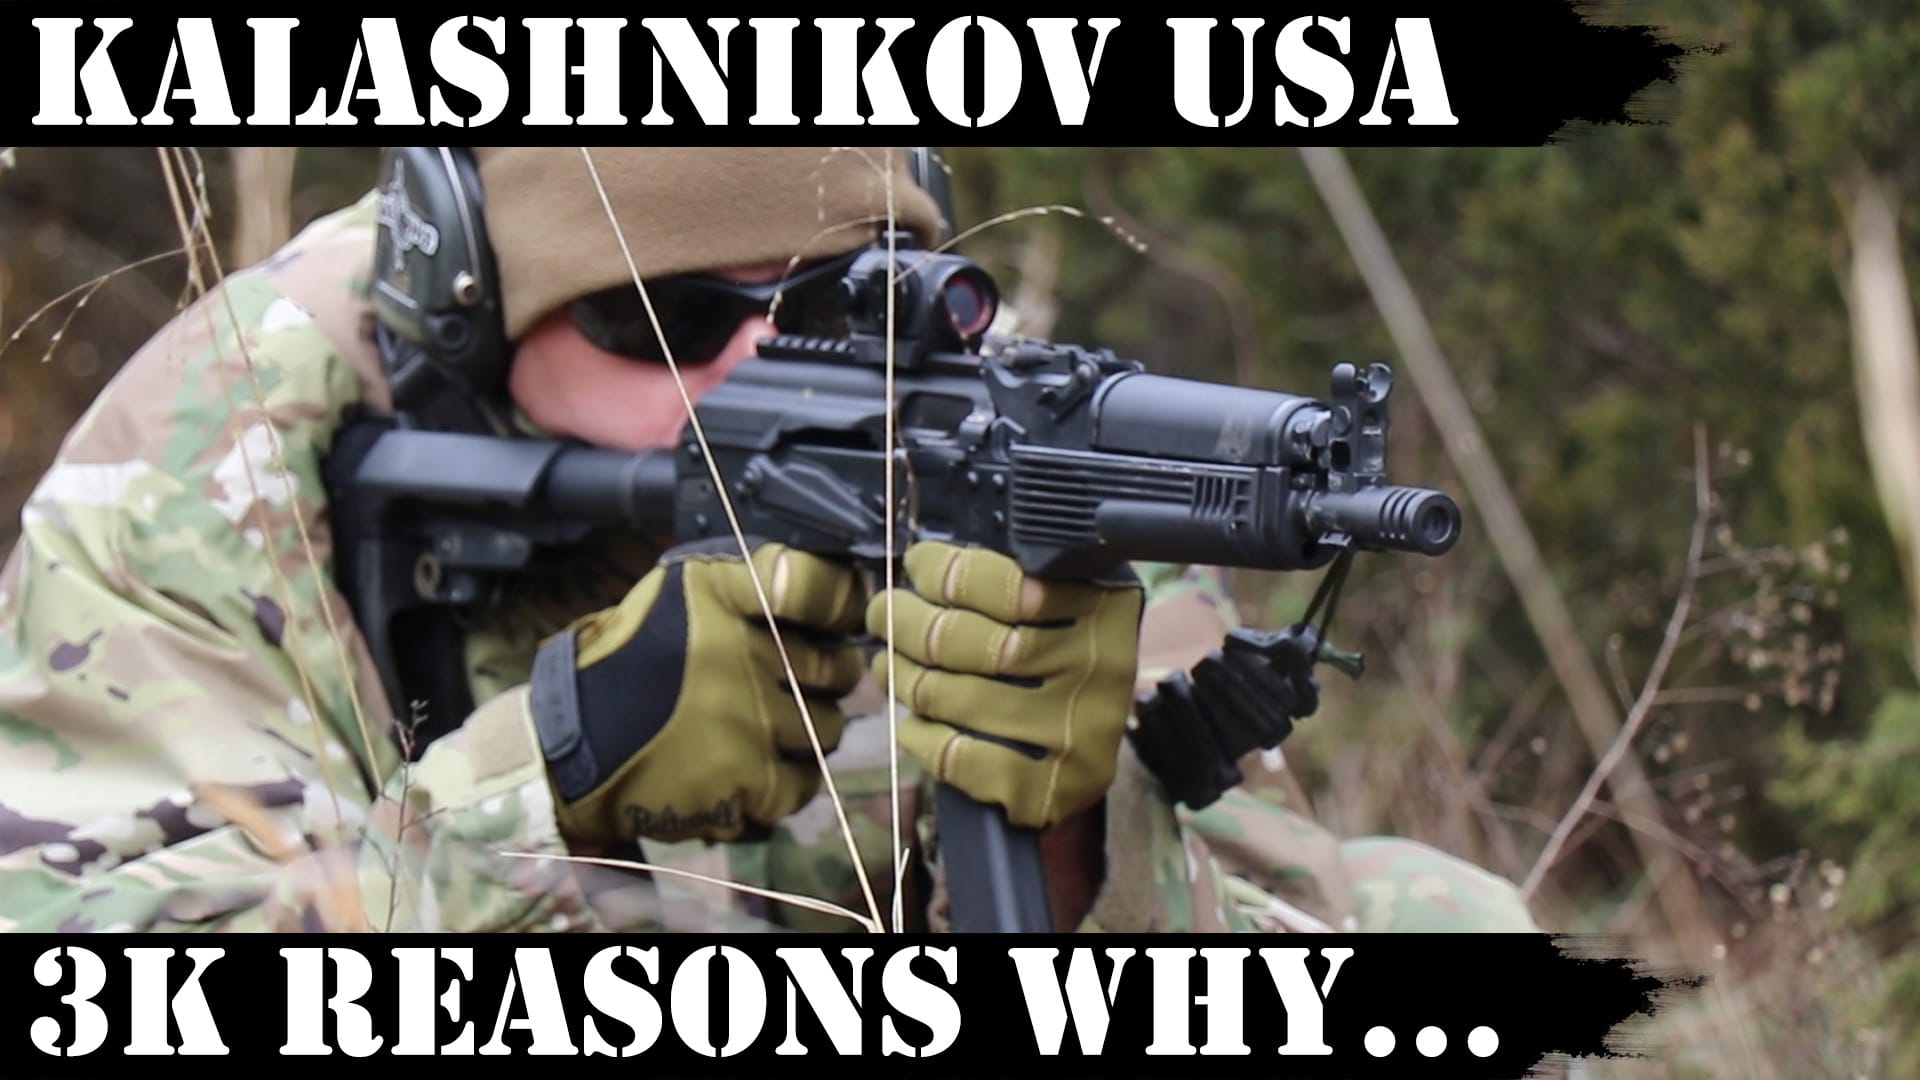 Kalashnikov USA: 3k Reasons Why KP9 rocks!